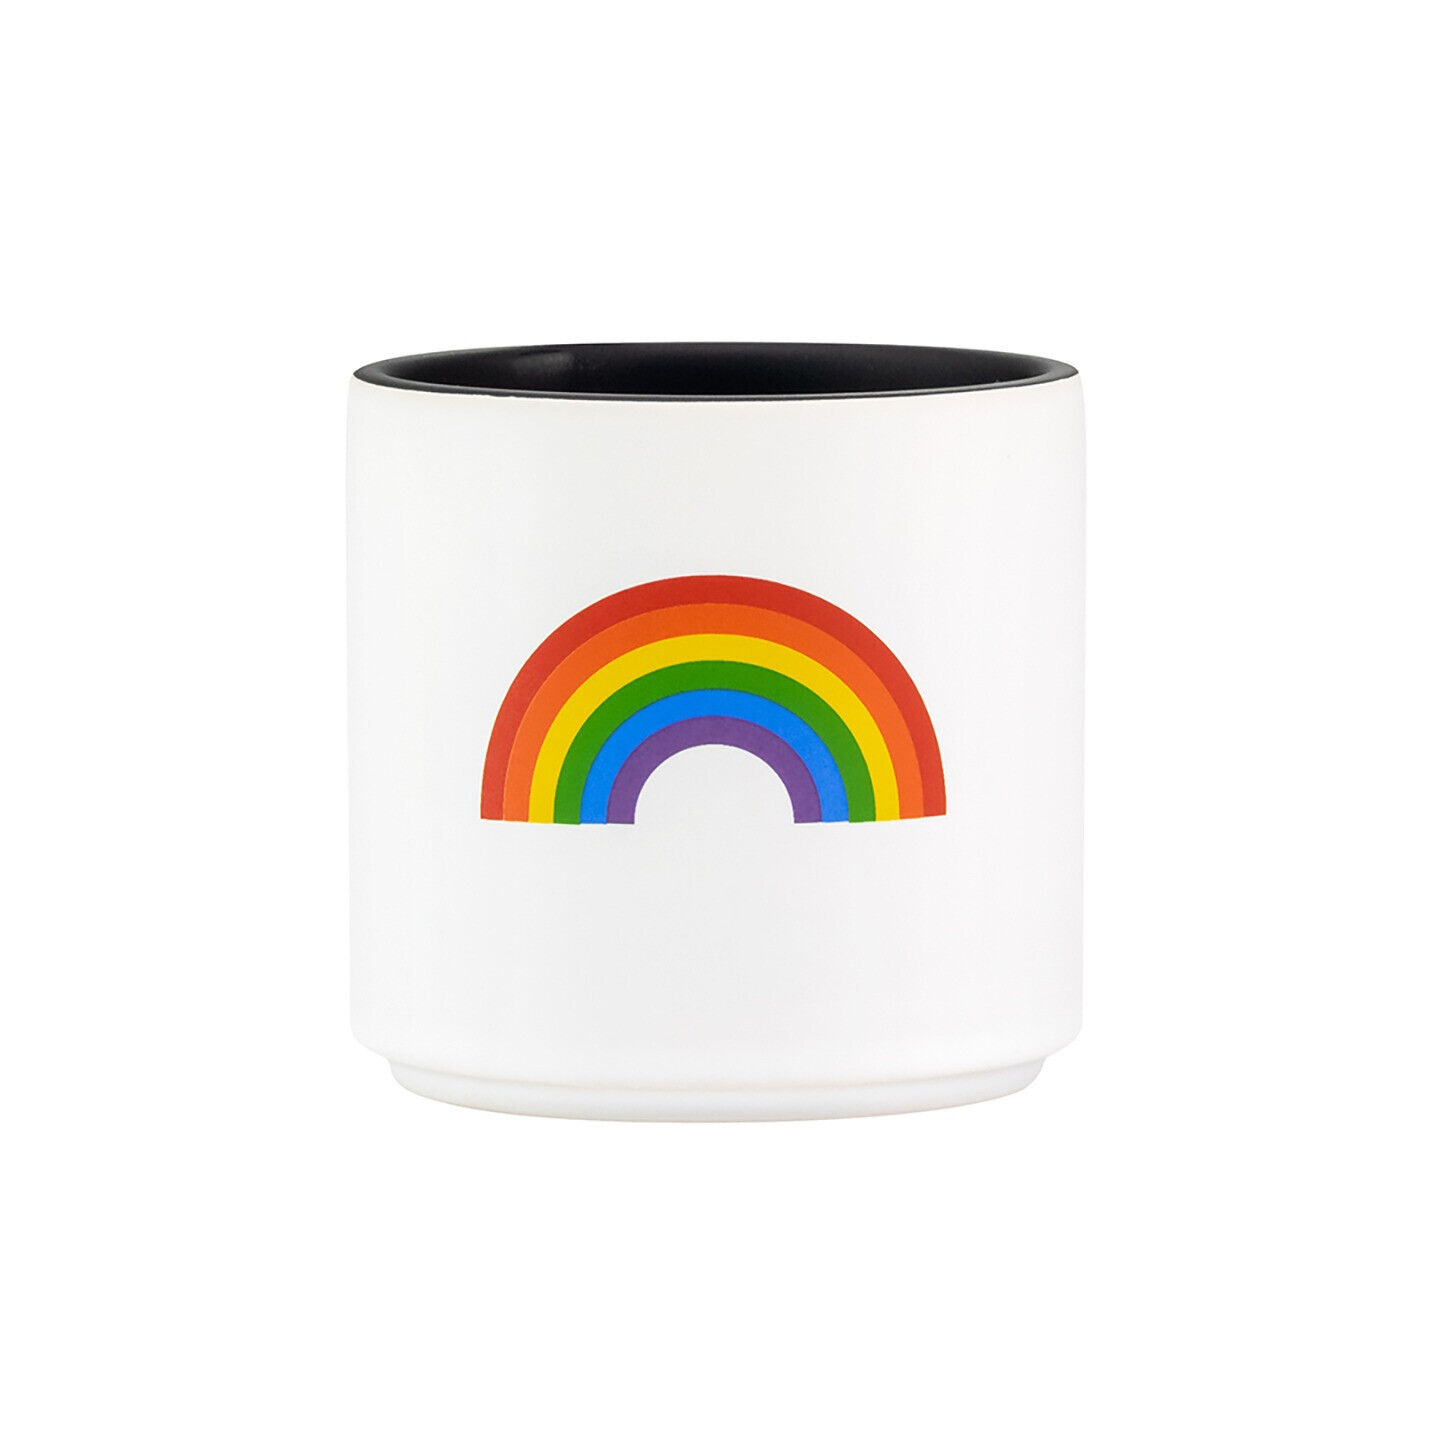 Gay Pride Rainbow Design Ceramic Planter featuring Rainbow